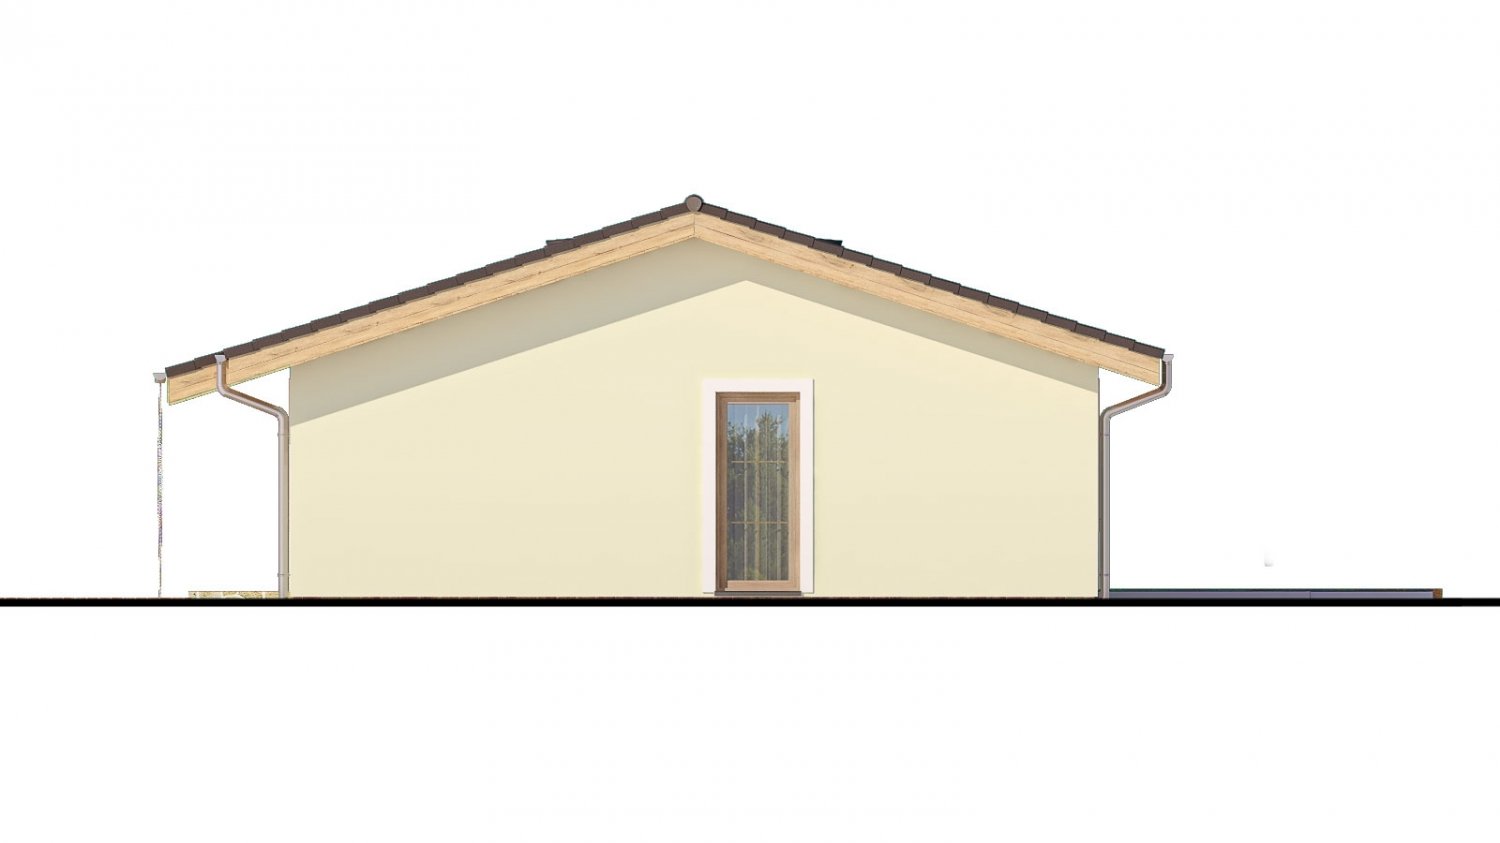 Zrkadlový pohľad 2. - Zděný projekt rodinného domu na úzký pozemek se sedlovou střechou. Zpracovaný v 3d realitě s umístěním na pozemek.